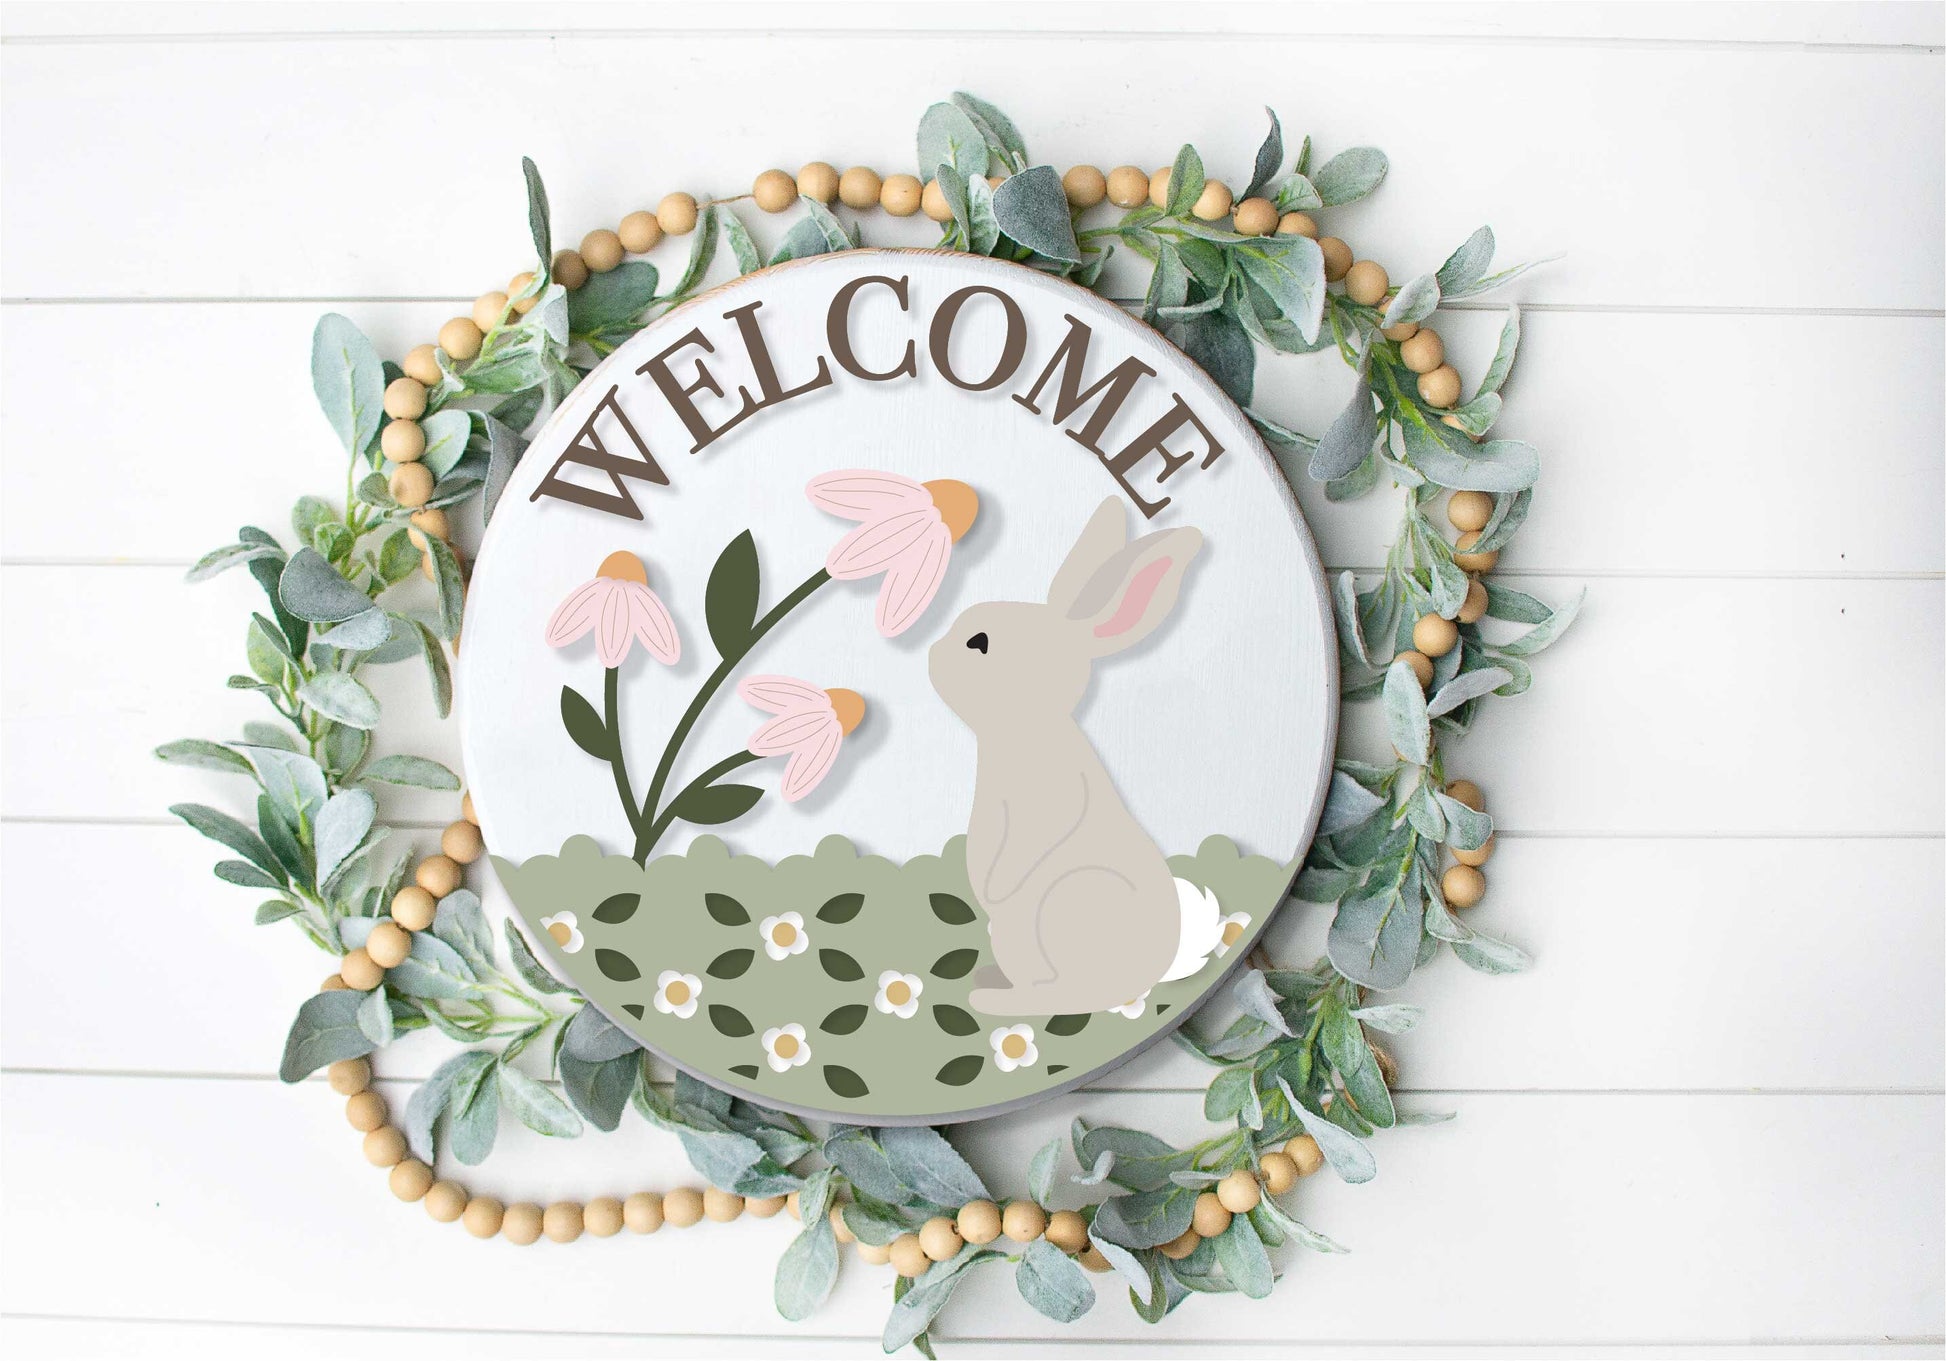 spring welcome sign SVG, spring bunny door hanger, floral Welcome sign SVG, spring decor, Easter door hanger, Glowforge SVG, laser cut file